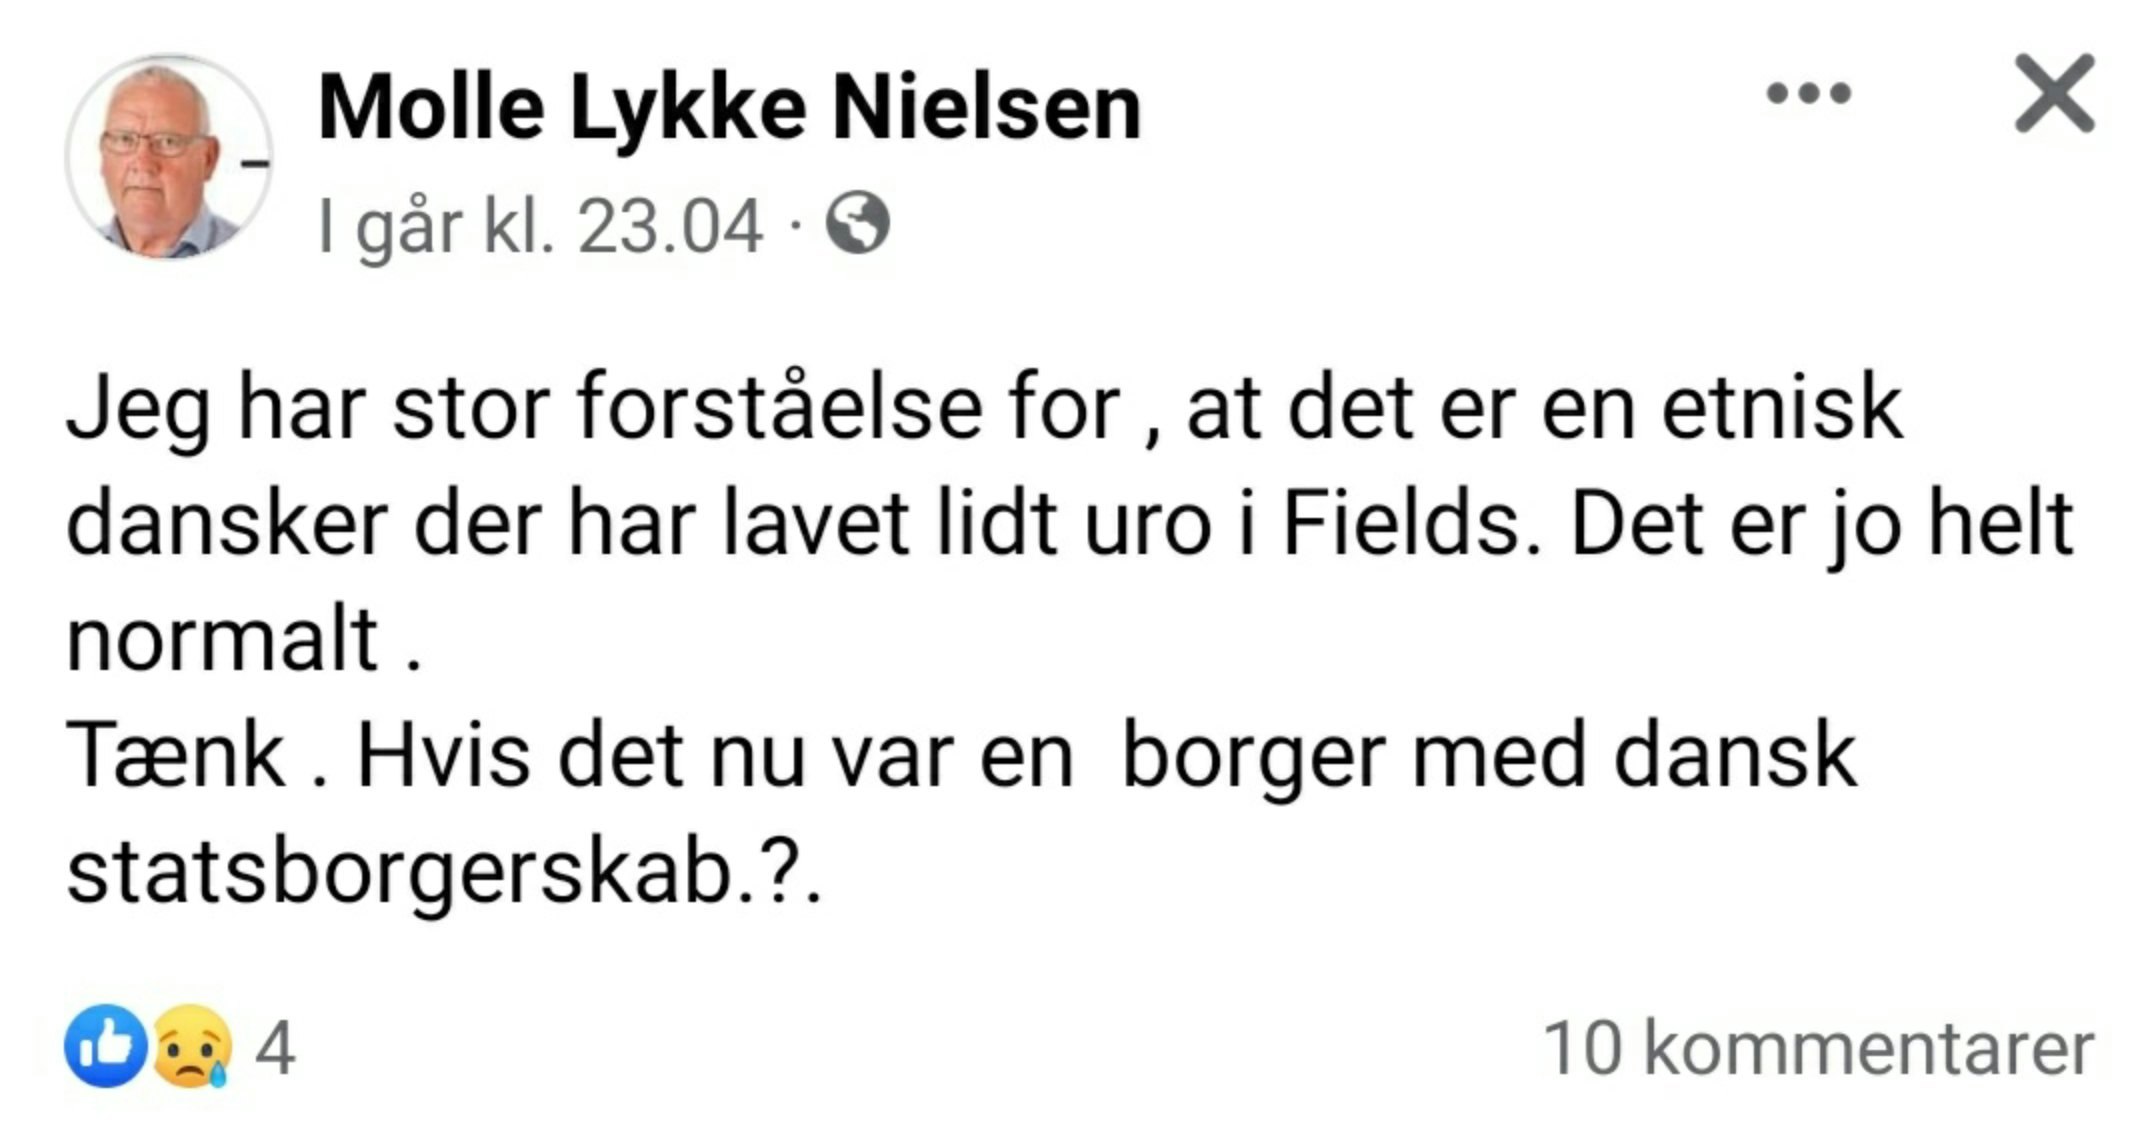 Molle Lykke Nielsens opslag på Facebook